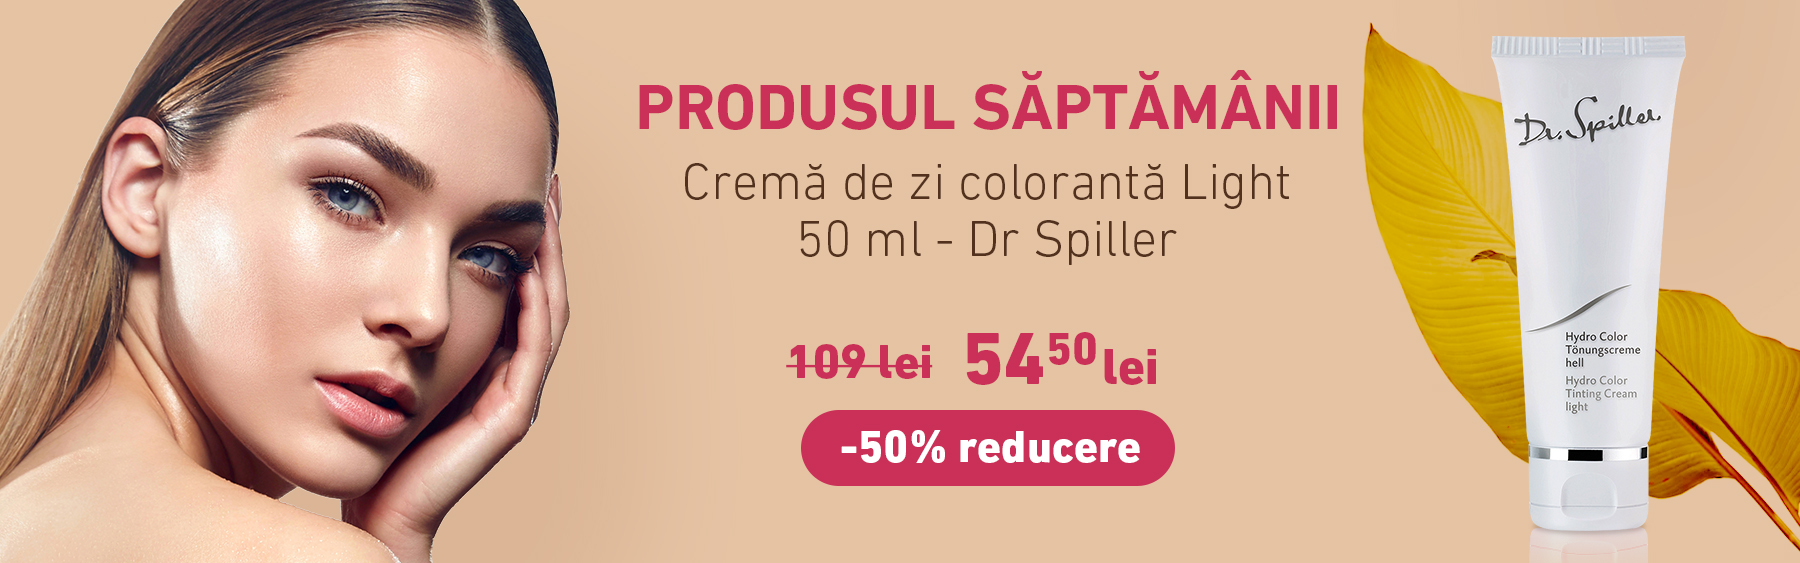 Crema de zi coloranta Light - 50 ml - Dr Spiller cu -50% reducere